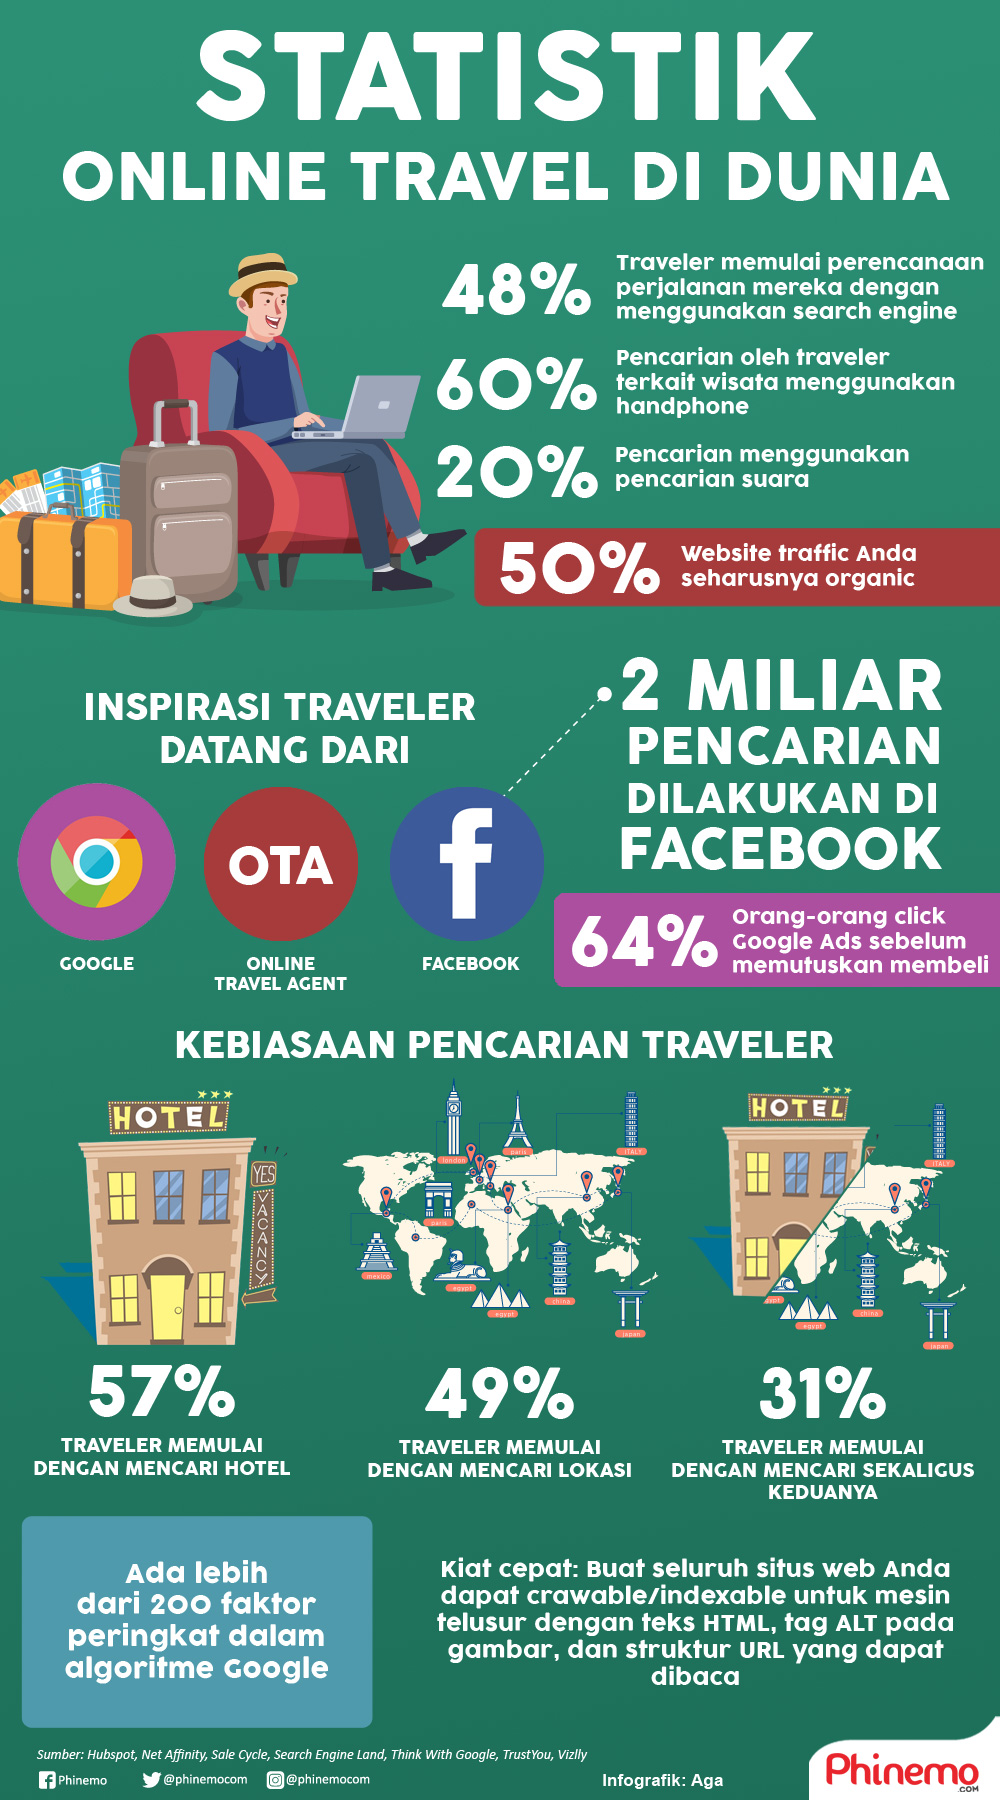 Infografik Data statistik kebiasaan pencarian traveler di dunia maya.